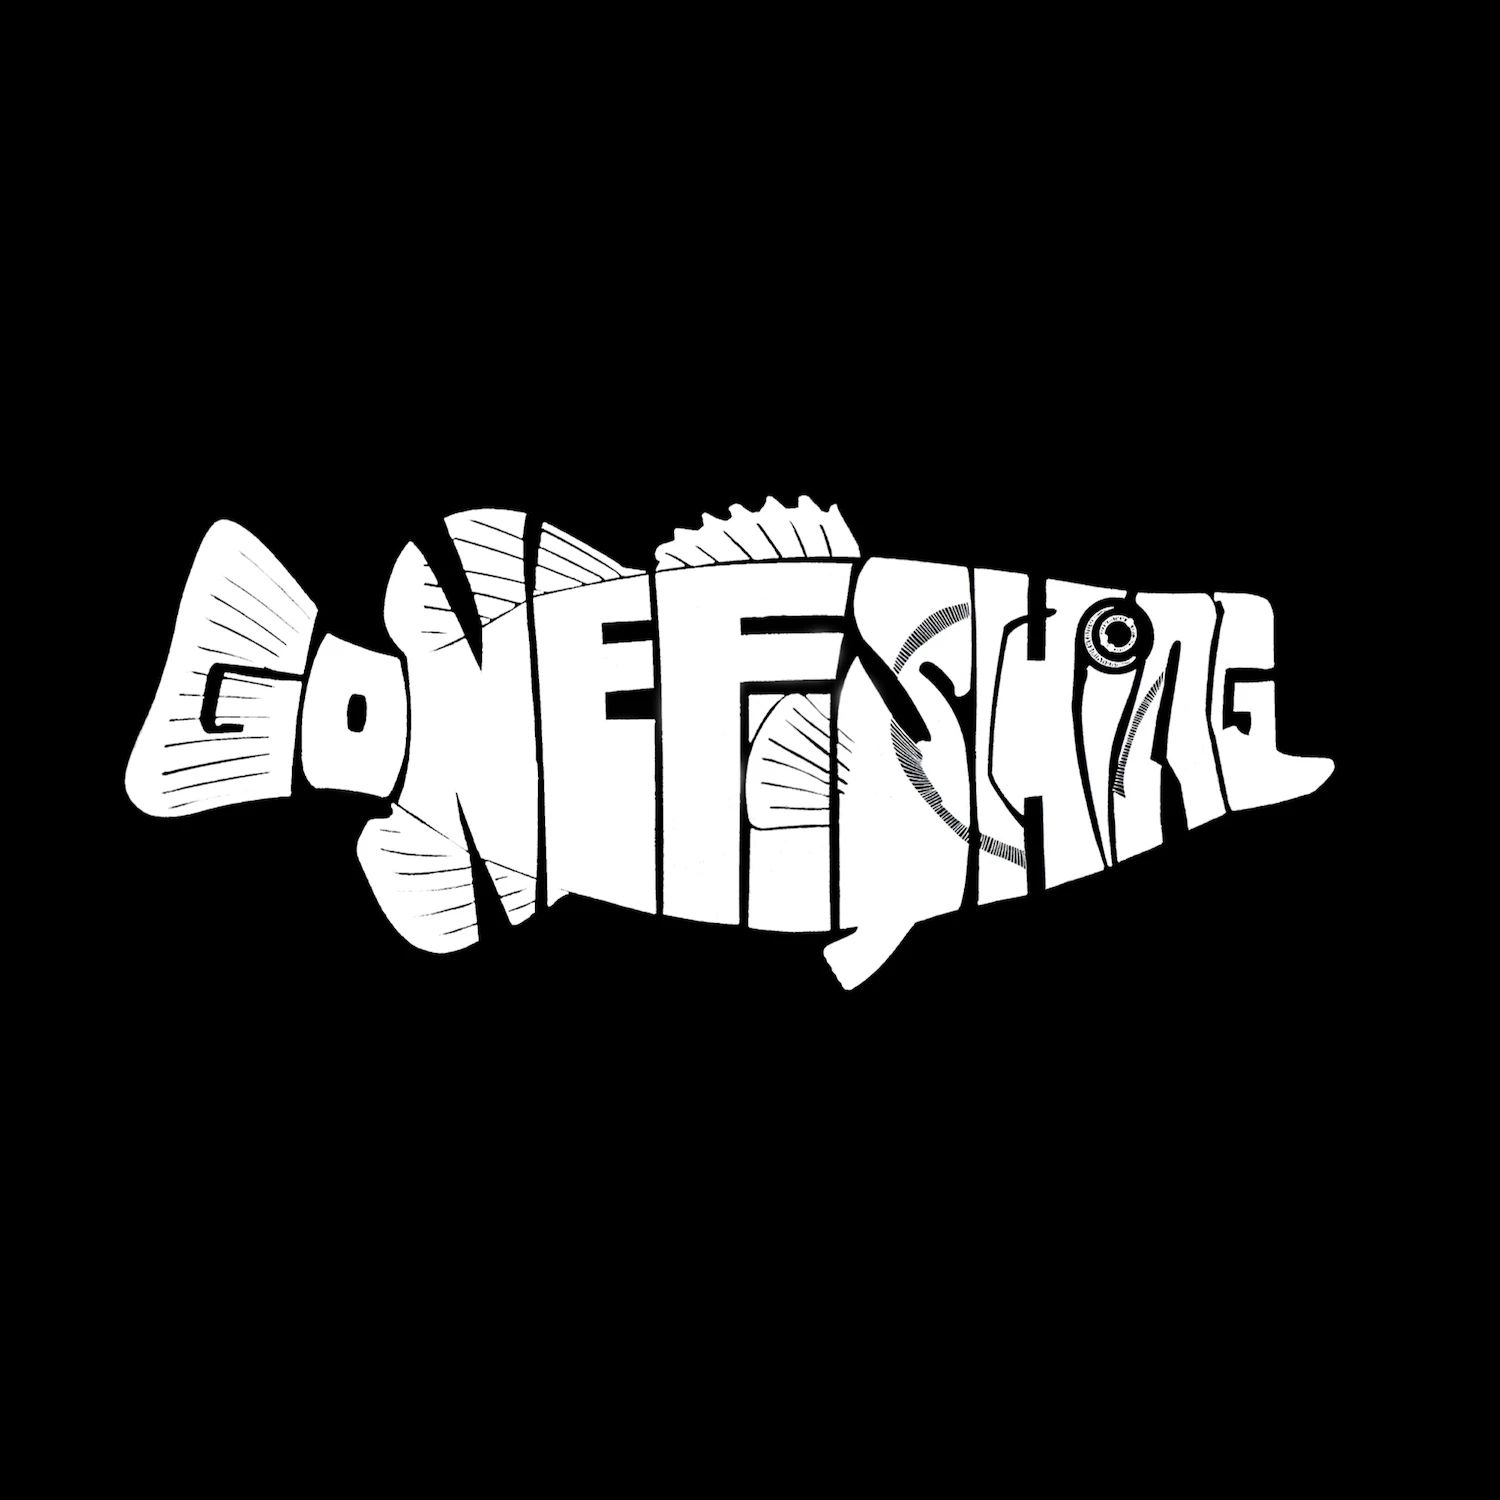 Bass — Gone Fishing — мужская футболка с длинным рукавом с надписью Word Art LA Pop Art